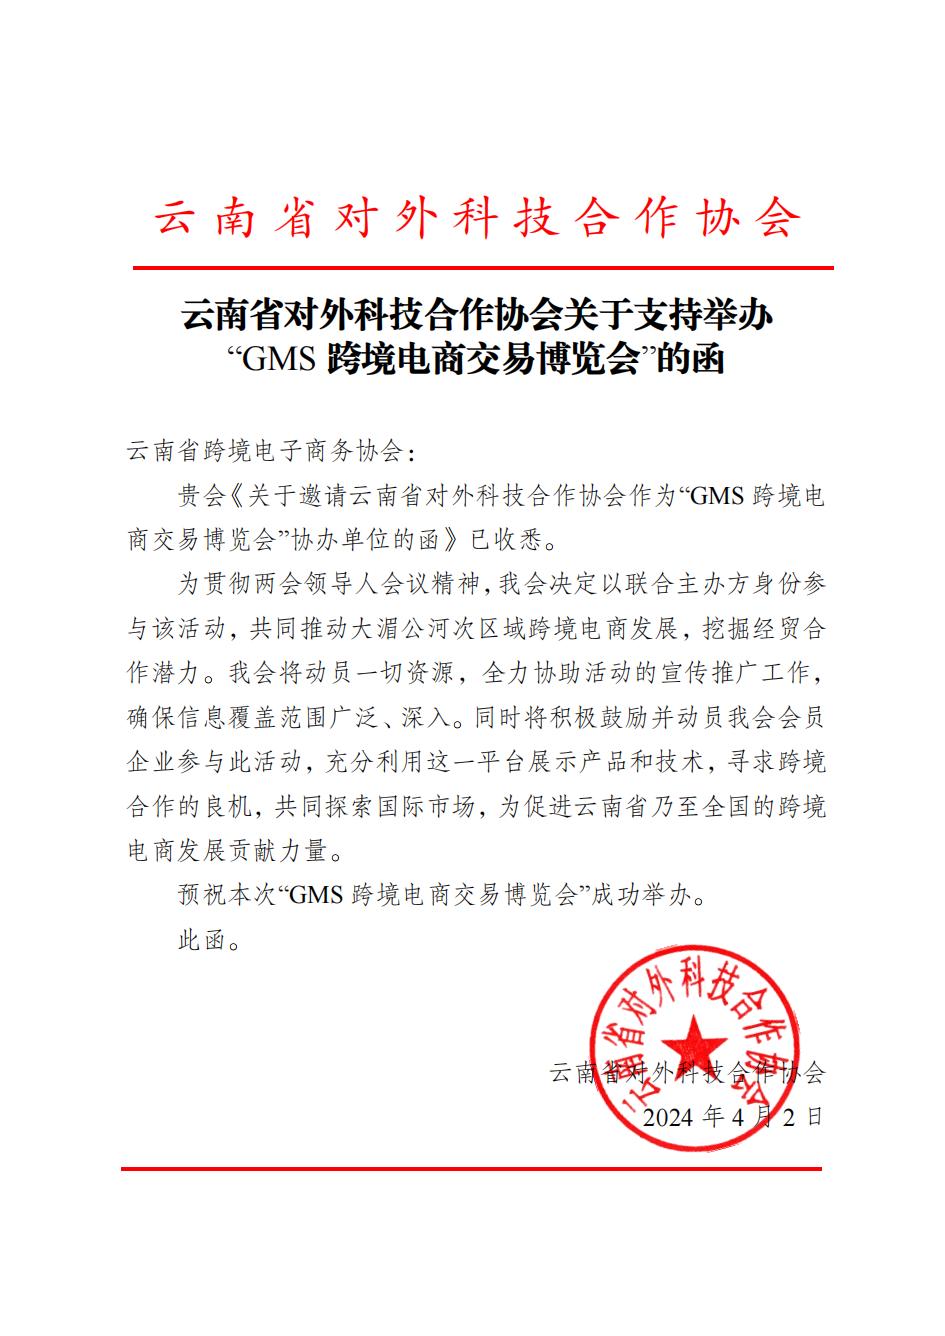 云南省对外科技合作协会关于作为联合主办方参与“GMS交易博览会”的回函_00.jpg